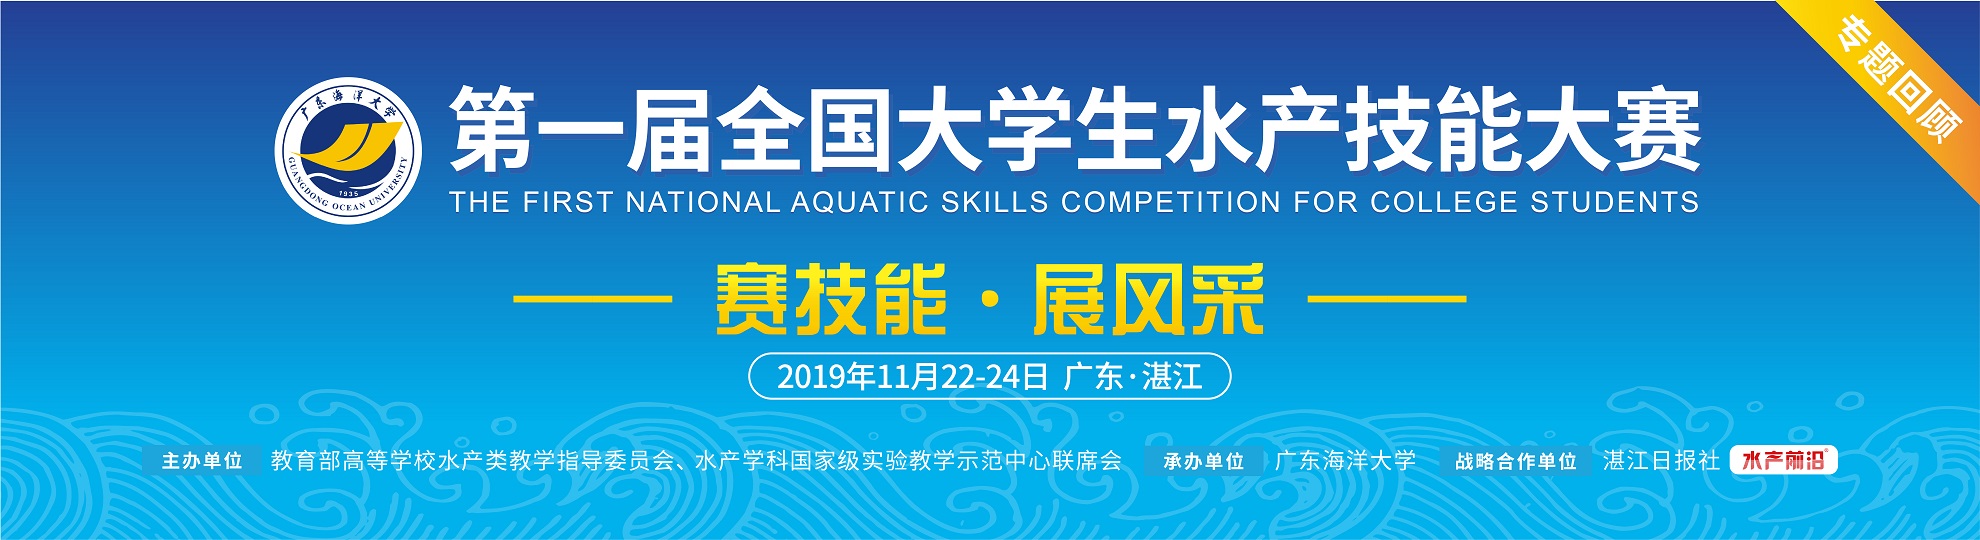 第一届全国大学生水产技能大赛